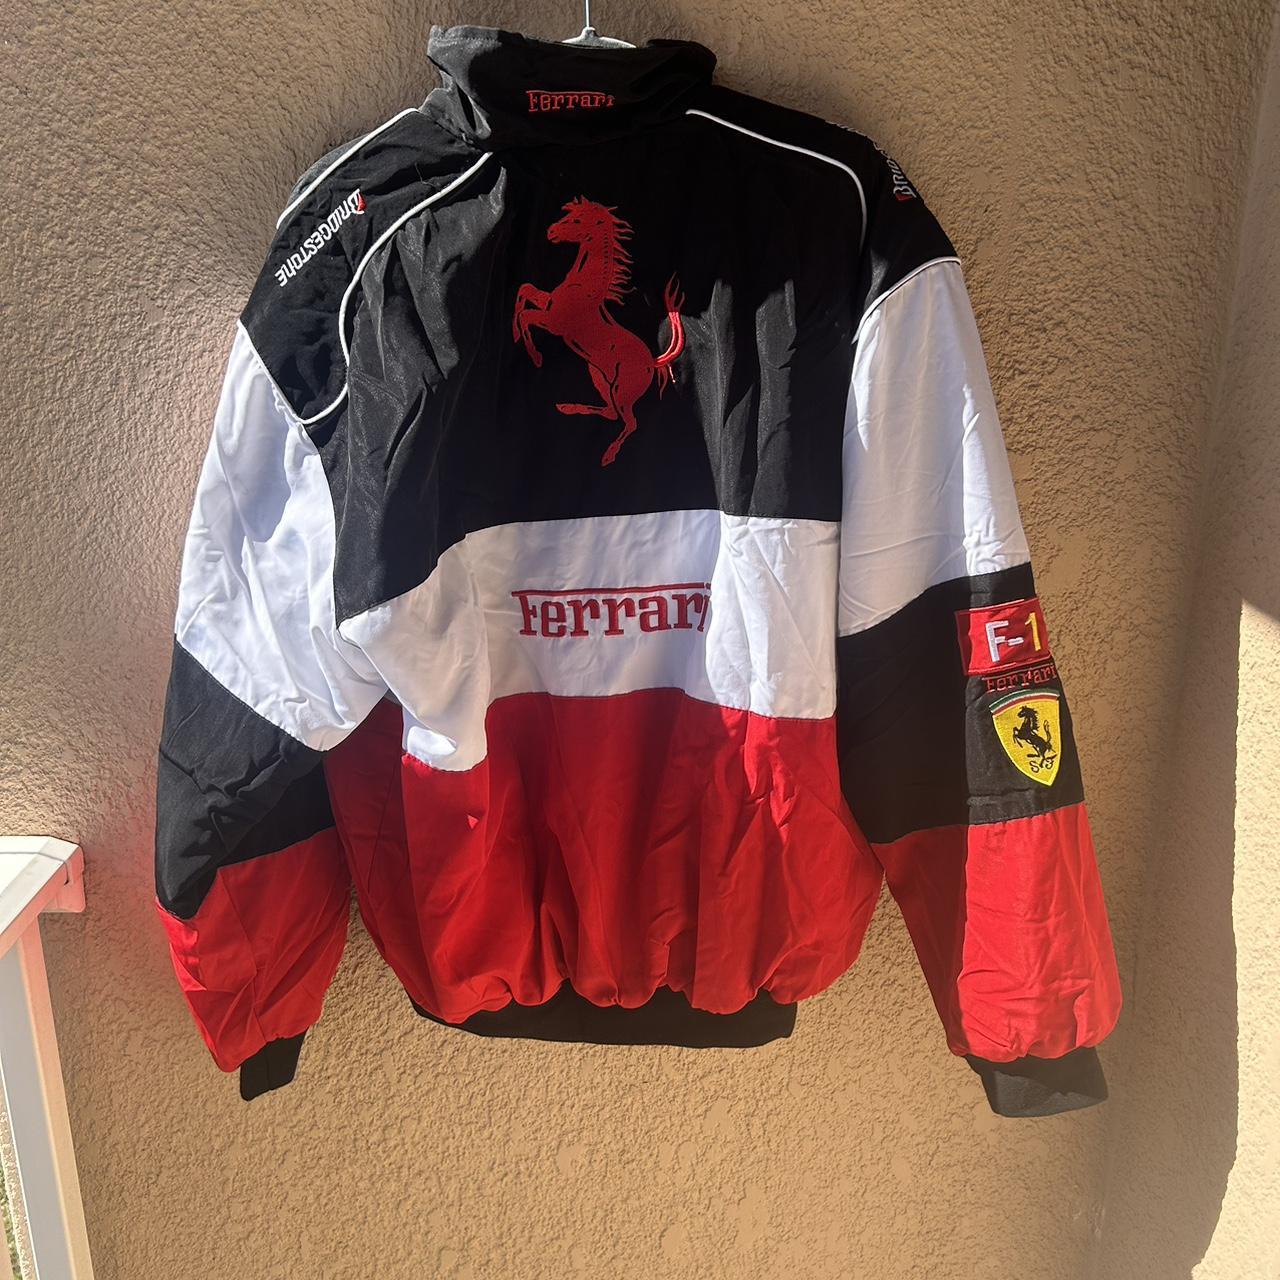 F1 Ferrari racing jacket, NASCAR racing, zipper jacket - Depop